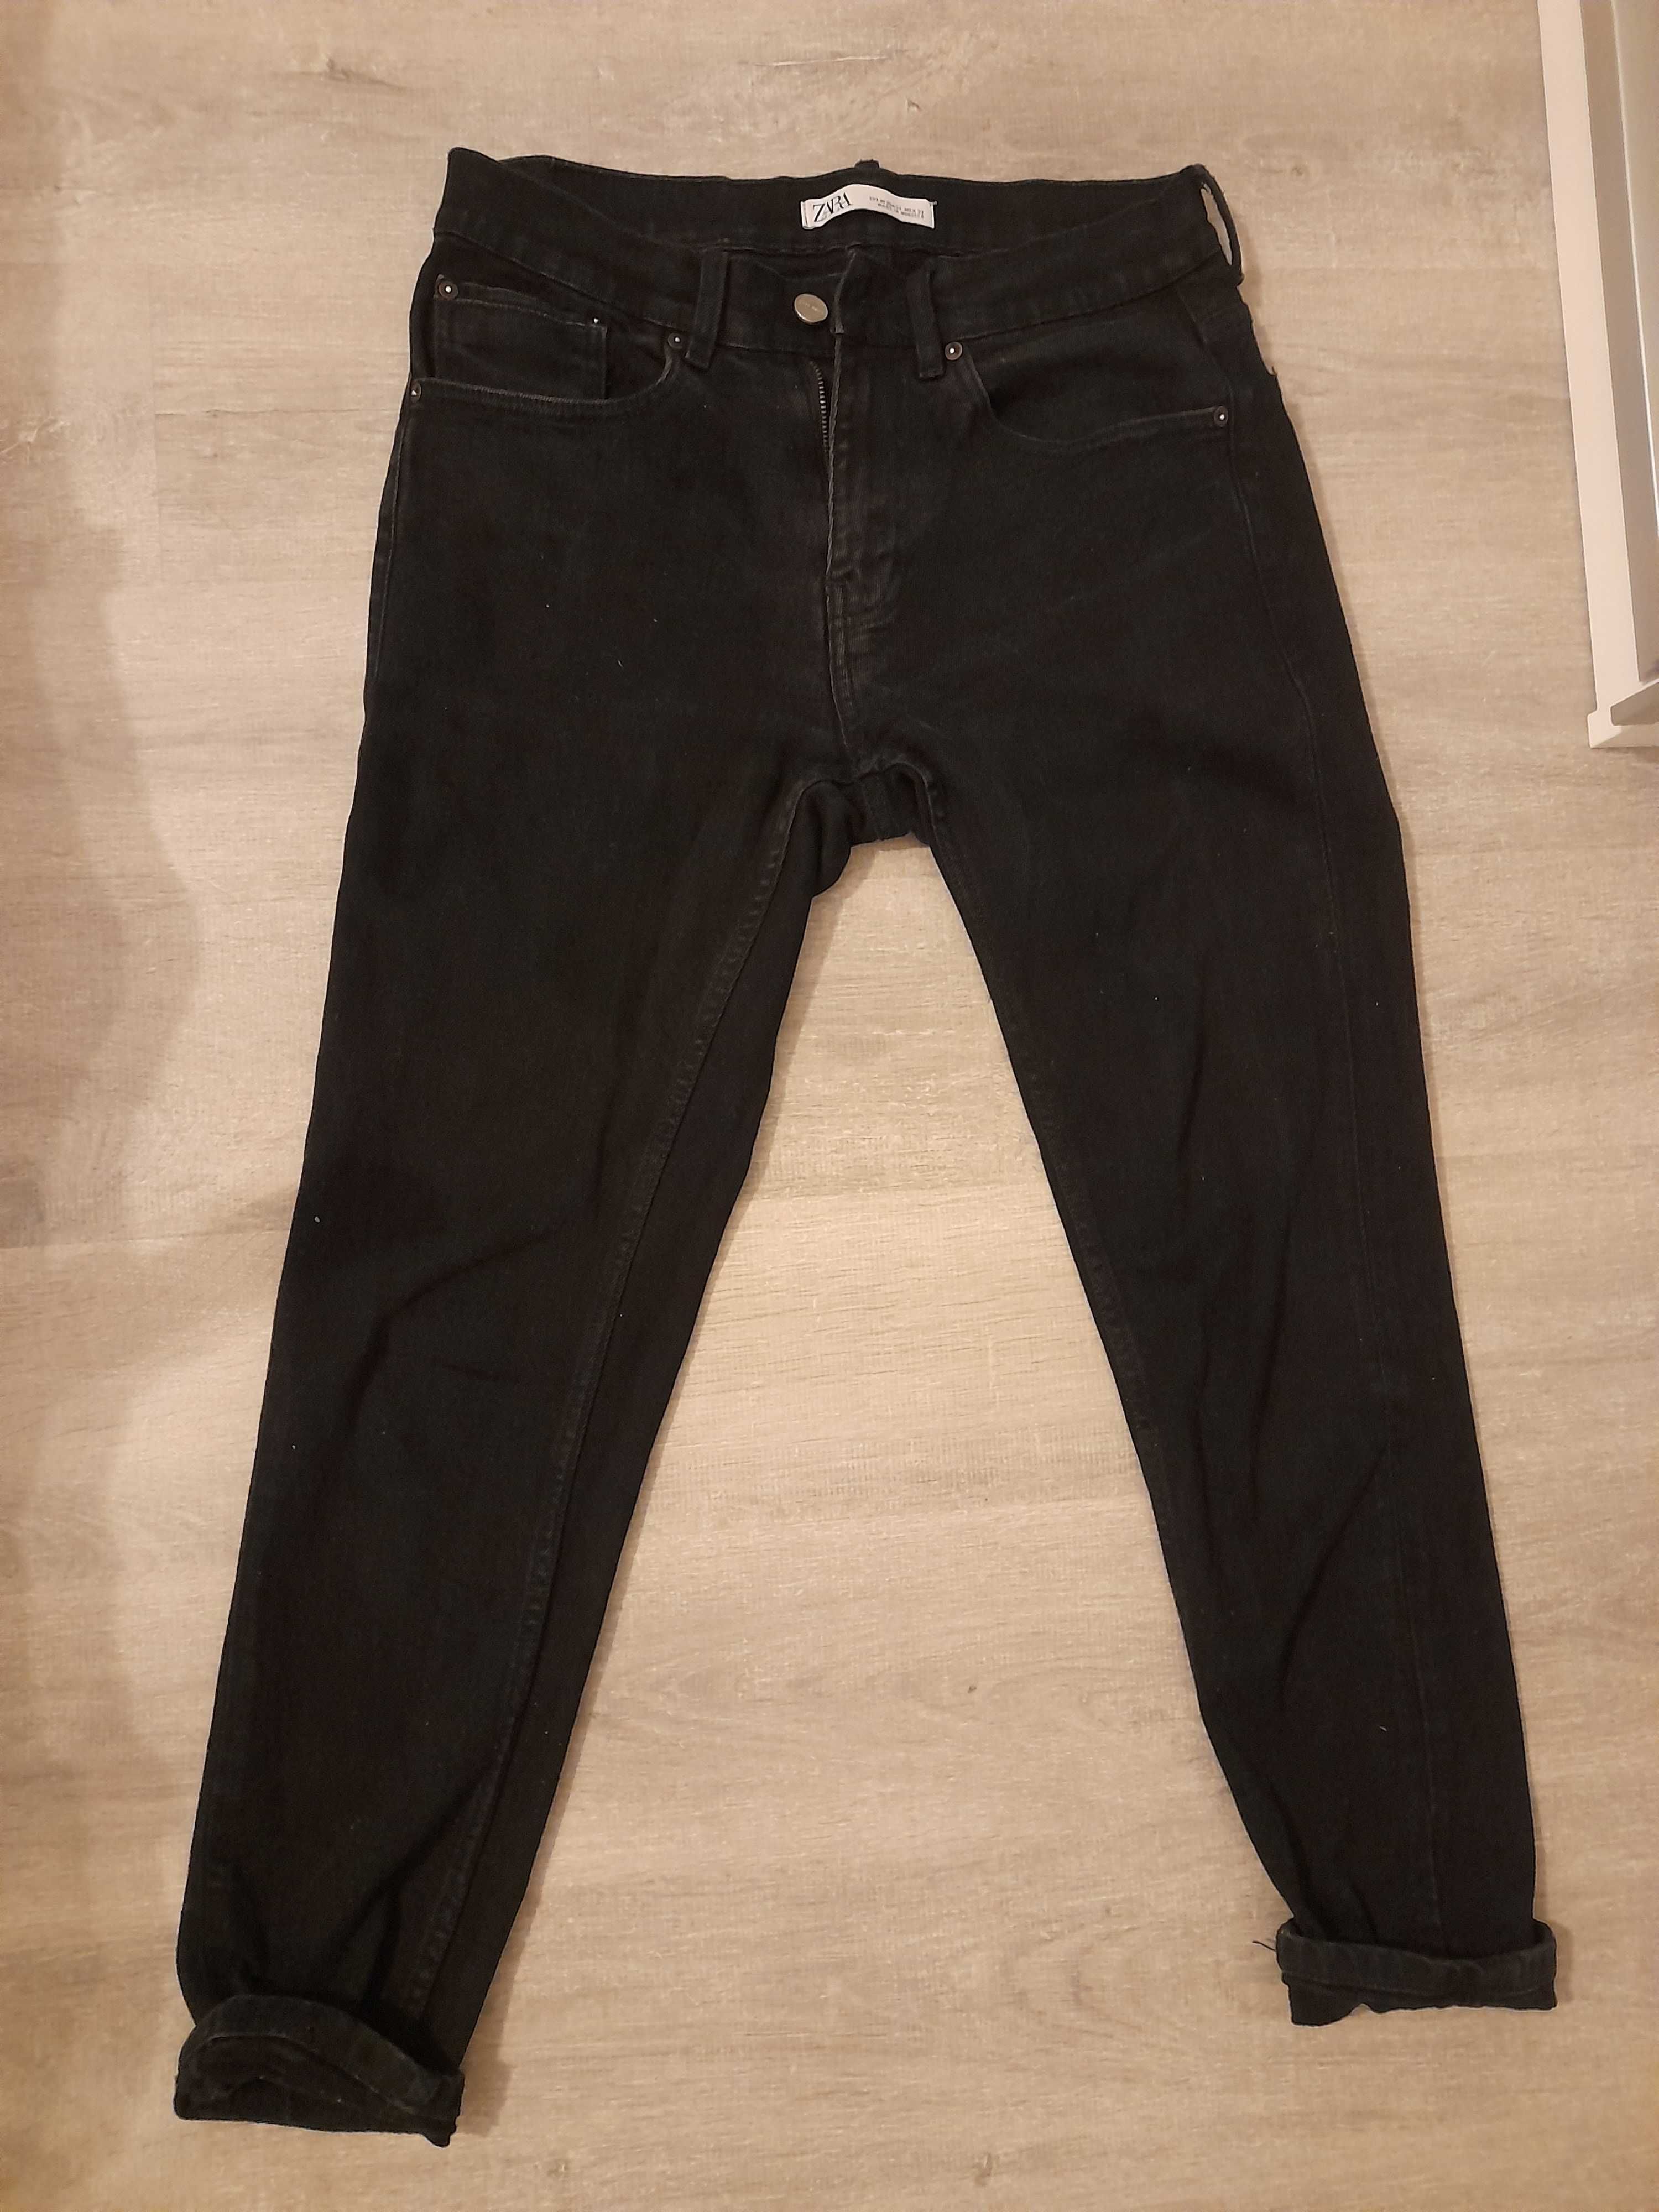 Zara spodnie boyfriend unisex czarny jeans 40 s